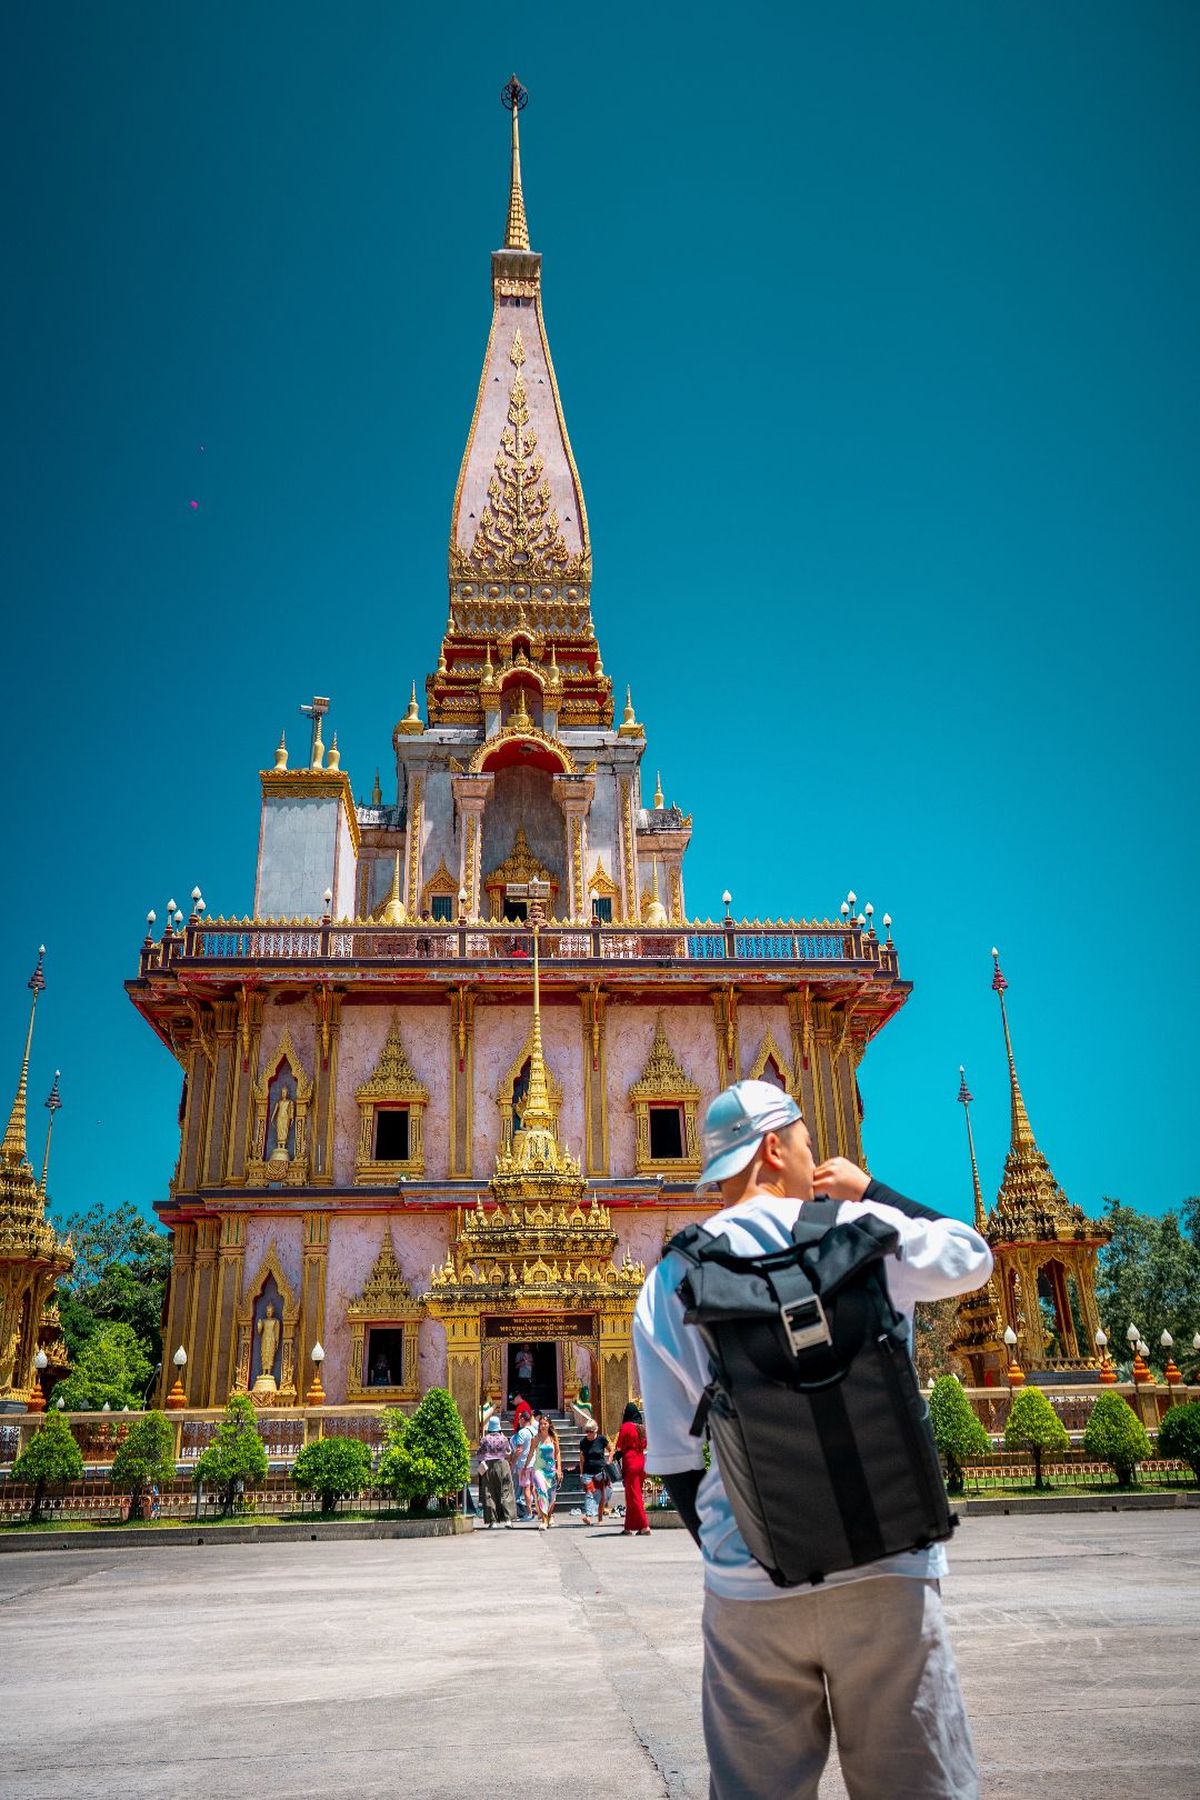 一个背着背包的男子站在寺庙前 仰望着塔。